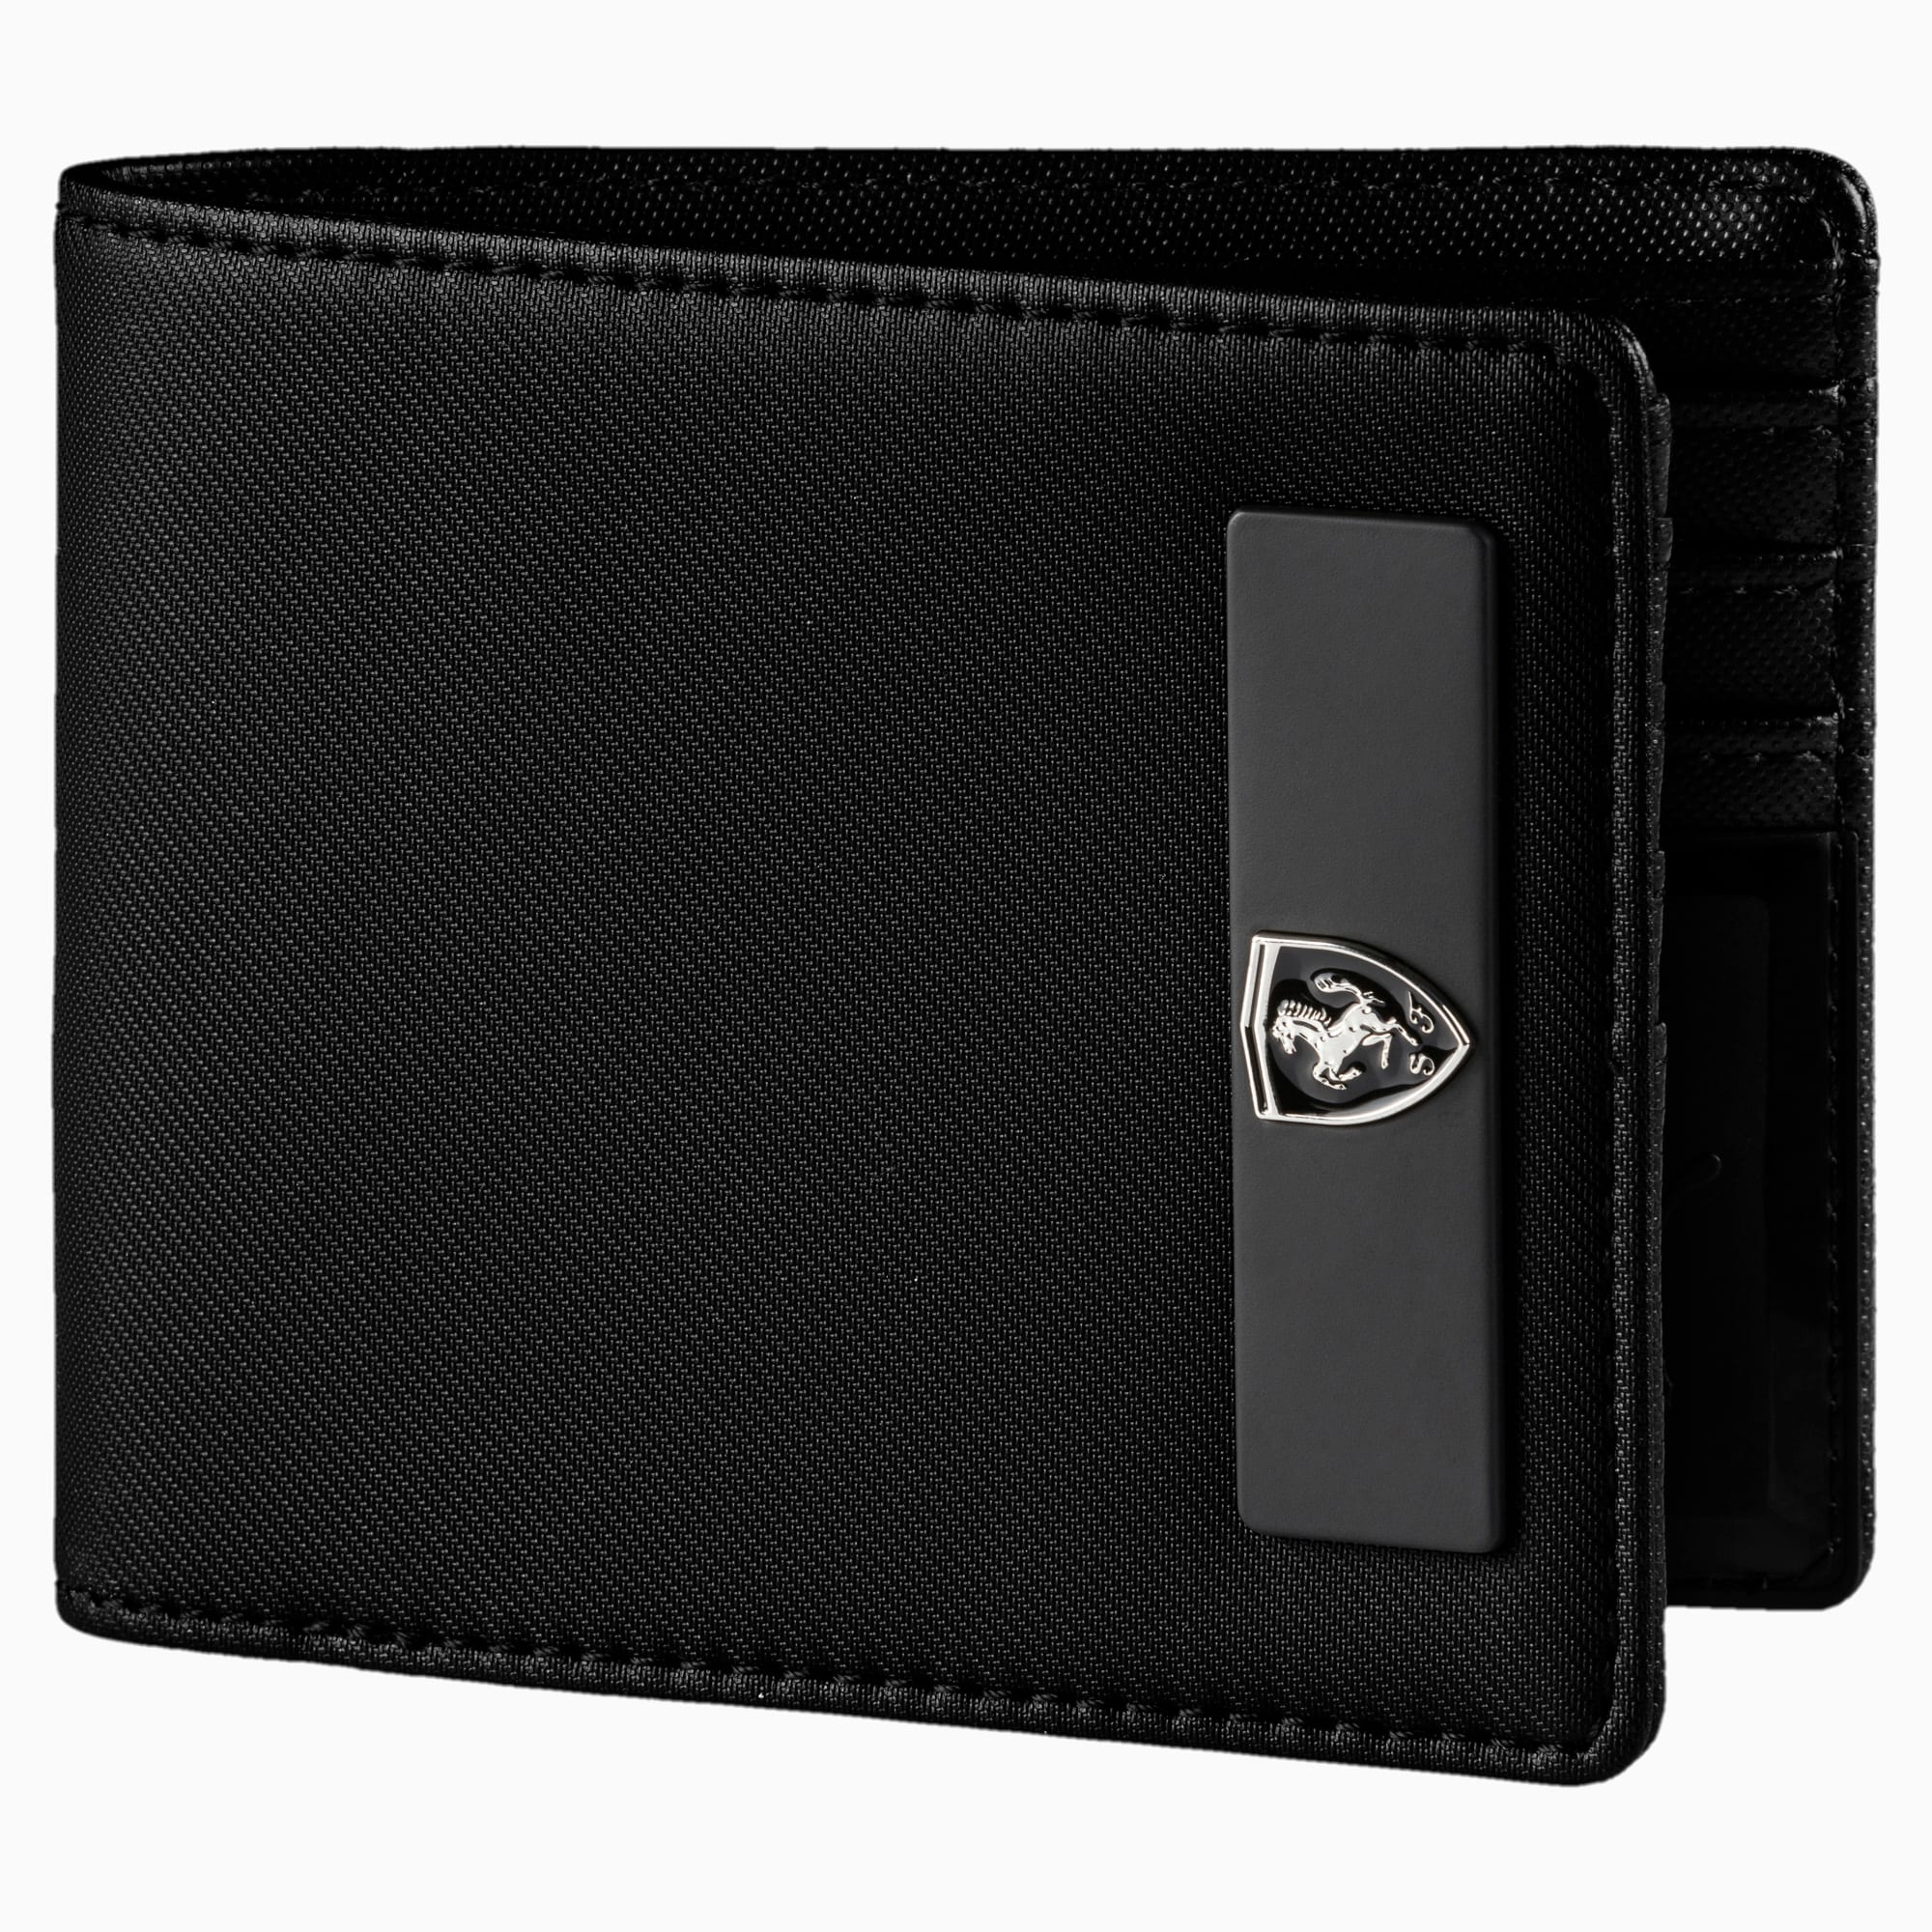 puma bmw wallet black